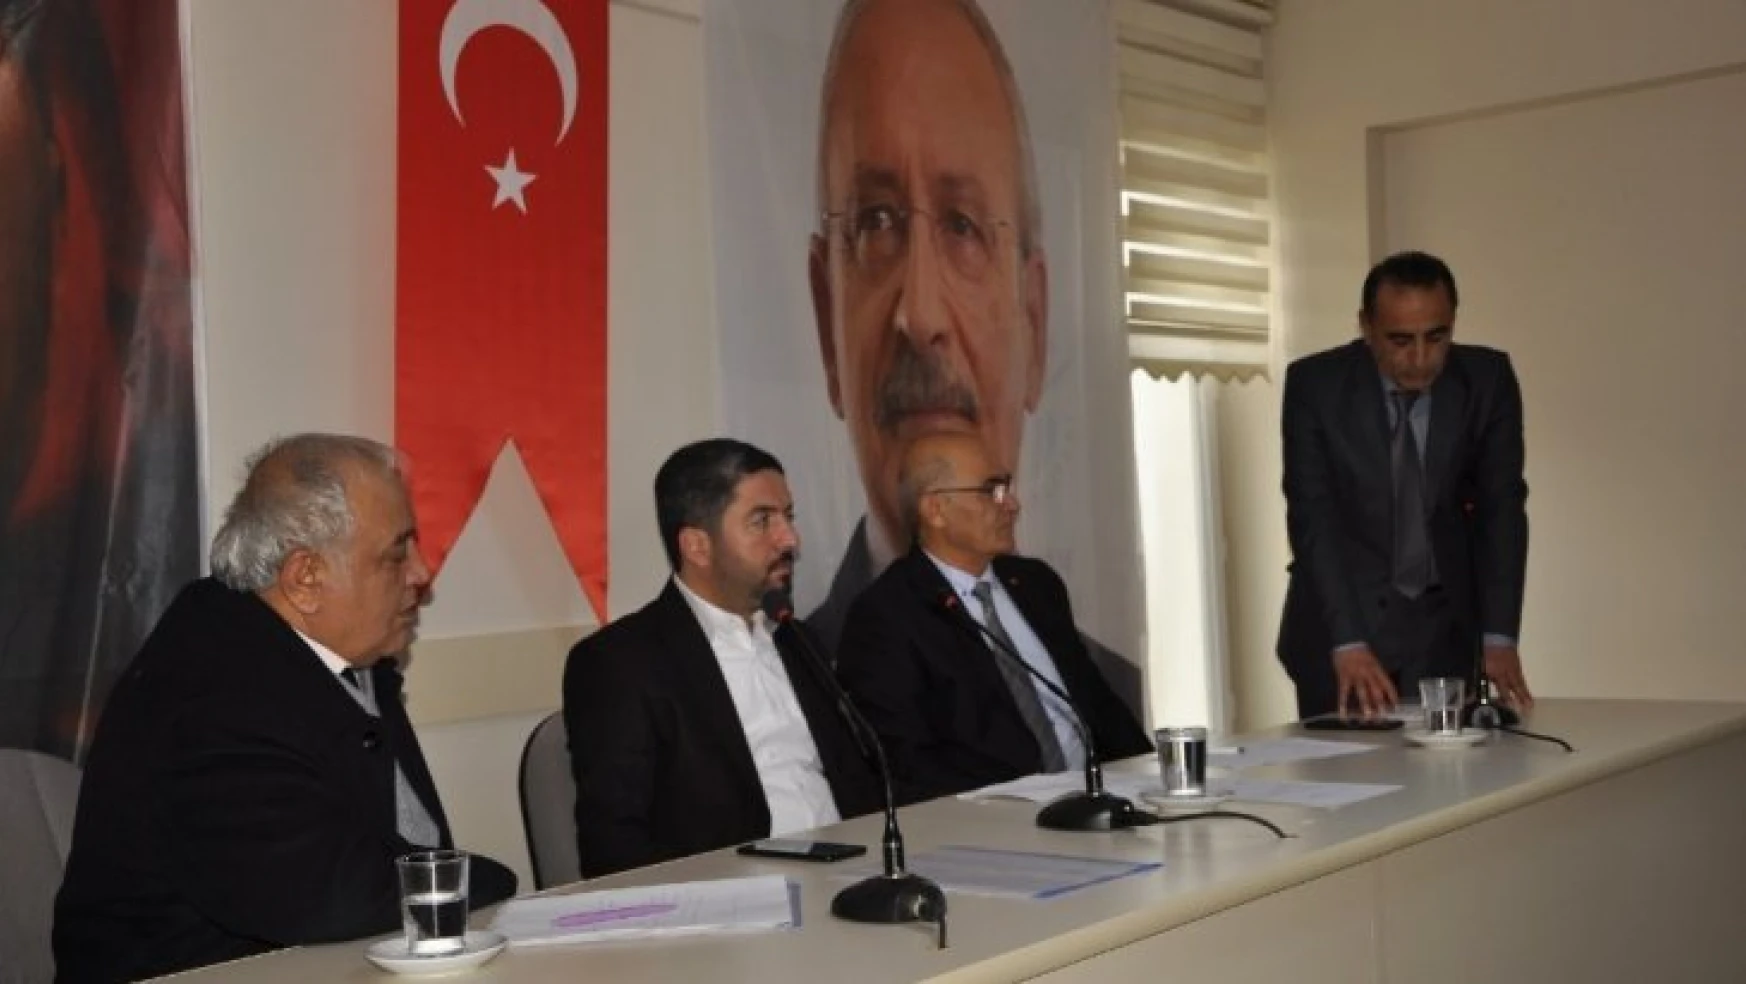 CHP Arguvan İlçe Başkanlığına Aslantürk seçildi